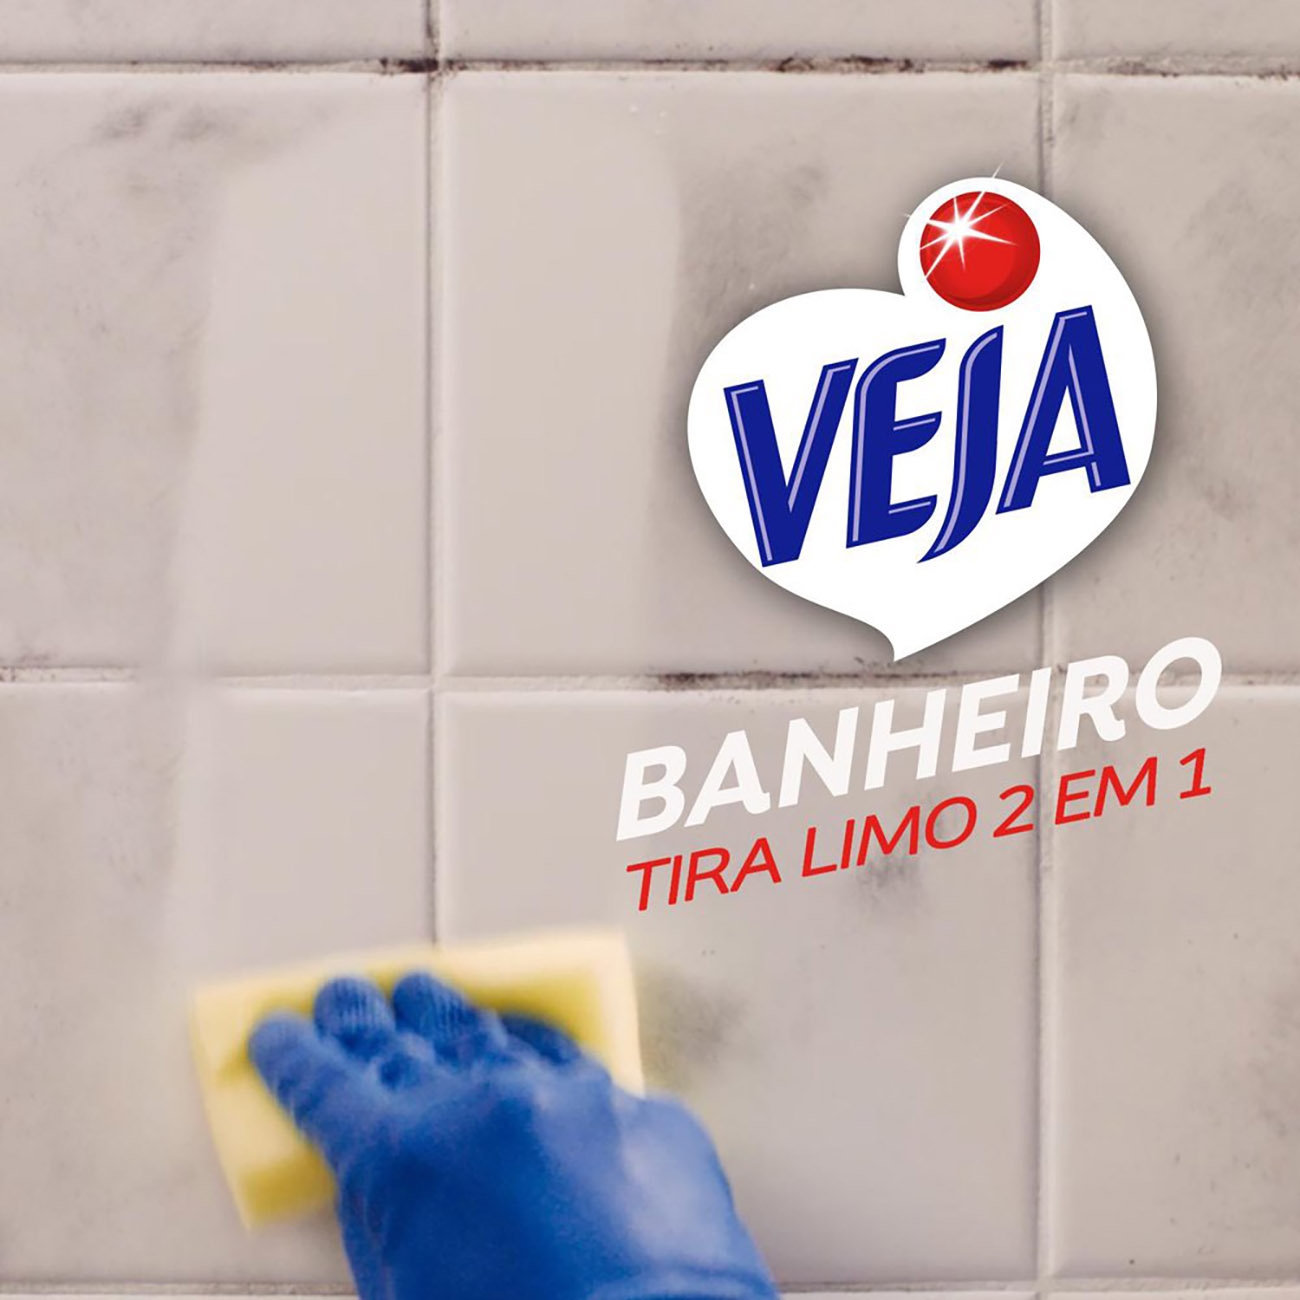 Limpador Banheiro Veja X14 Tira Limo Spray 500mL com 30% de desconto